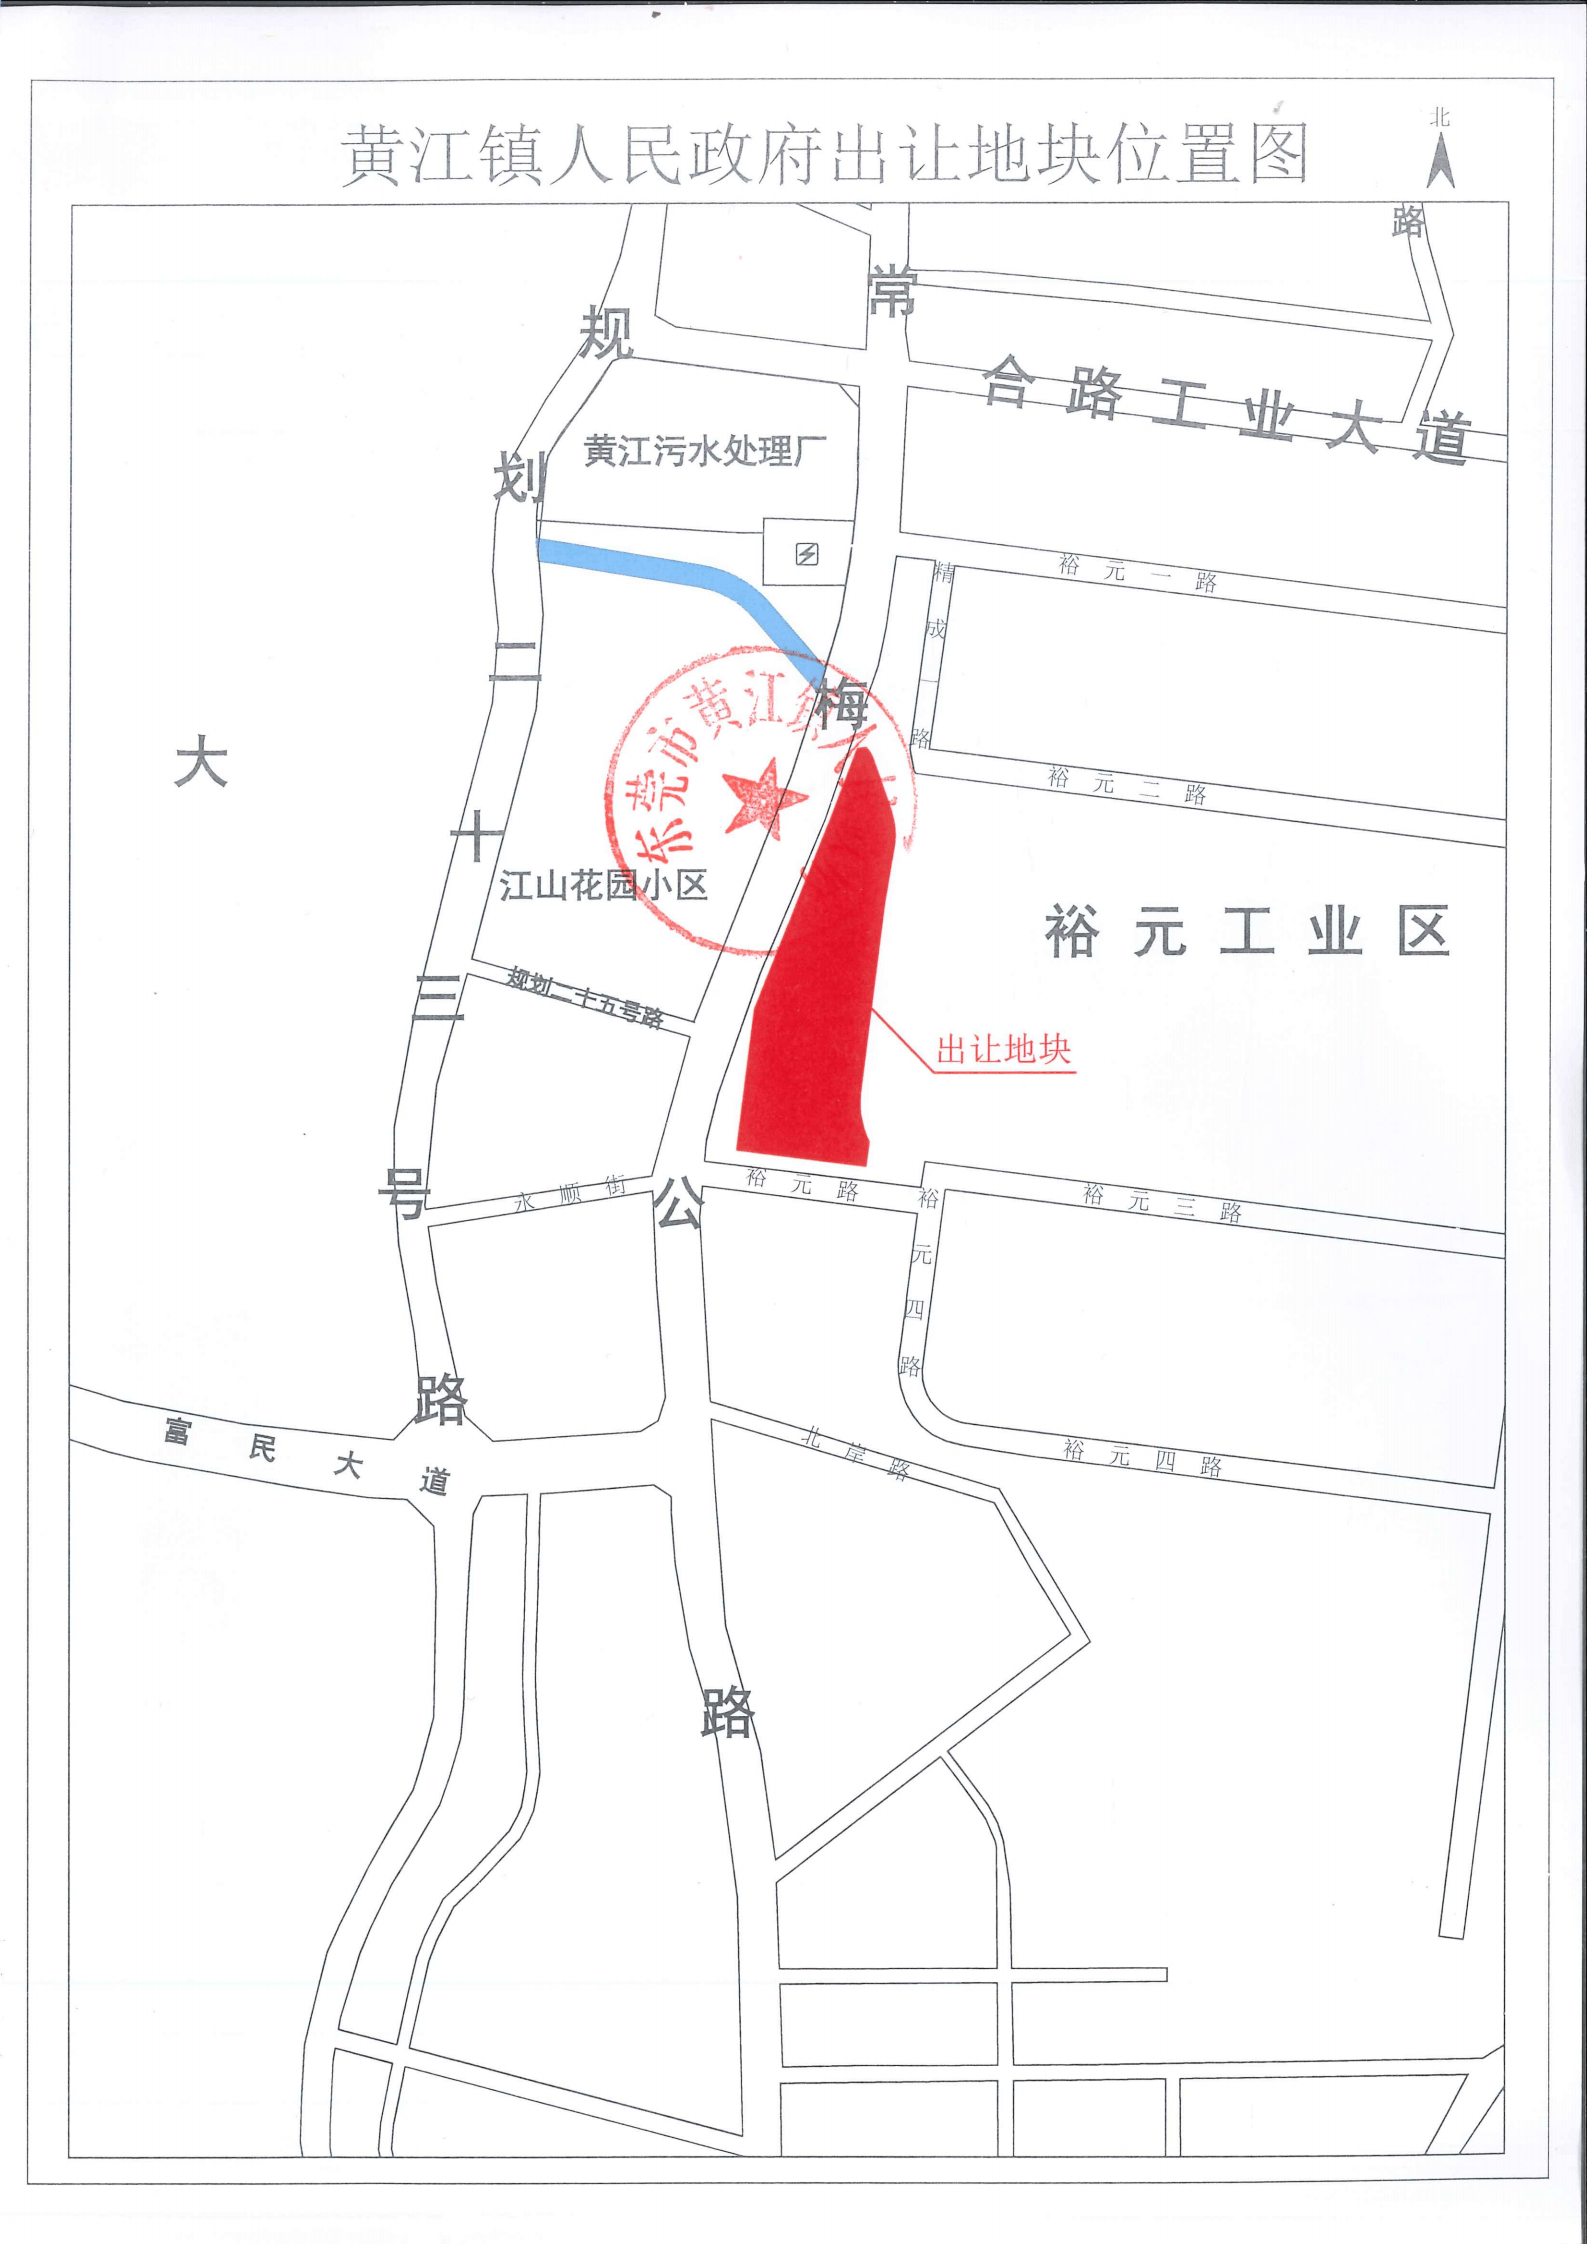 2021wr011号地块商住地位于东莞市黄江镇北岸社区,宝山社区,2021wr